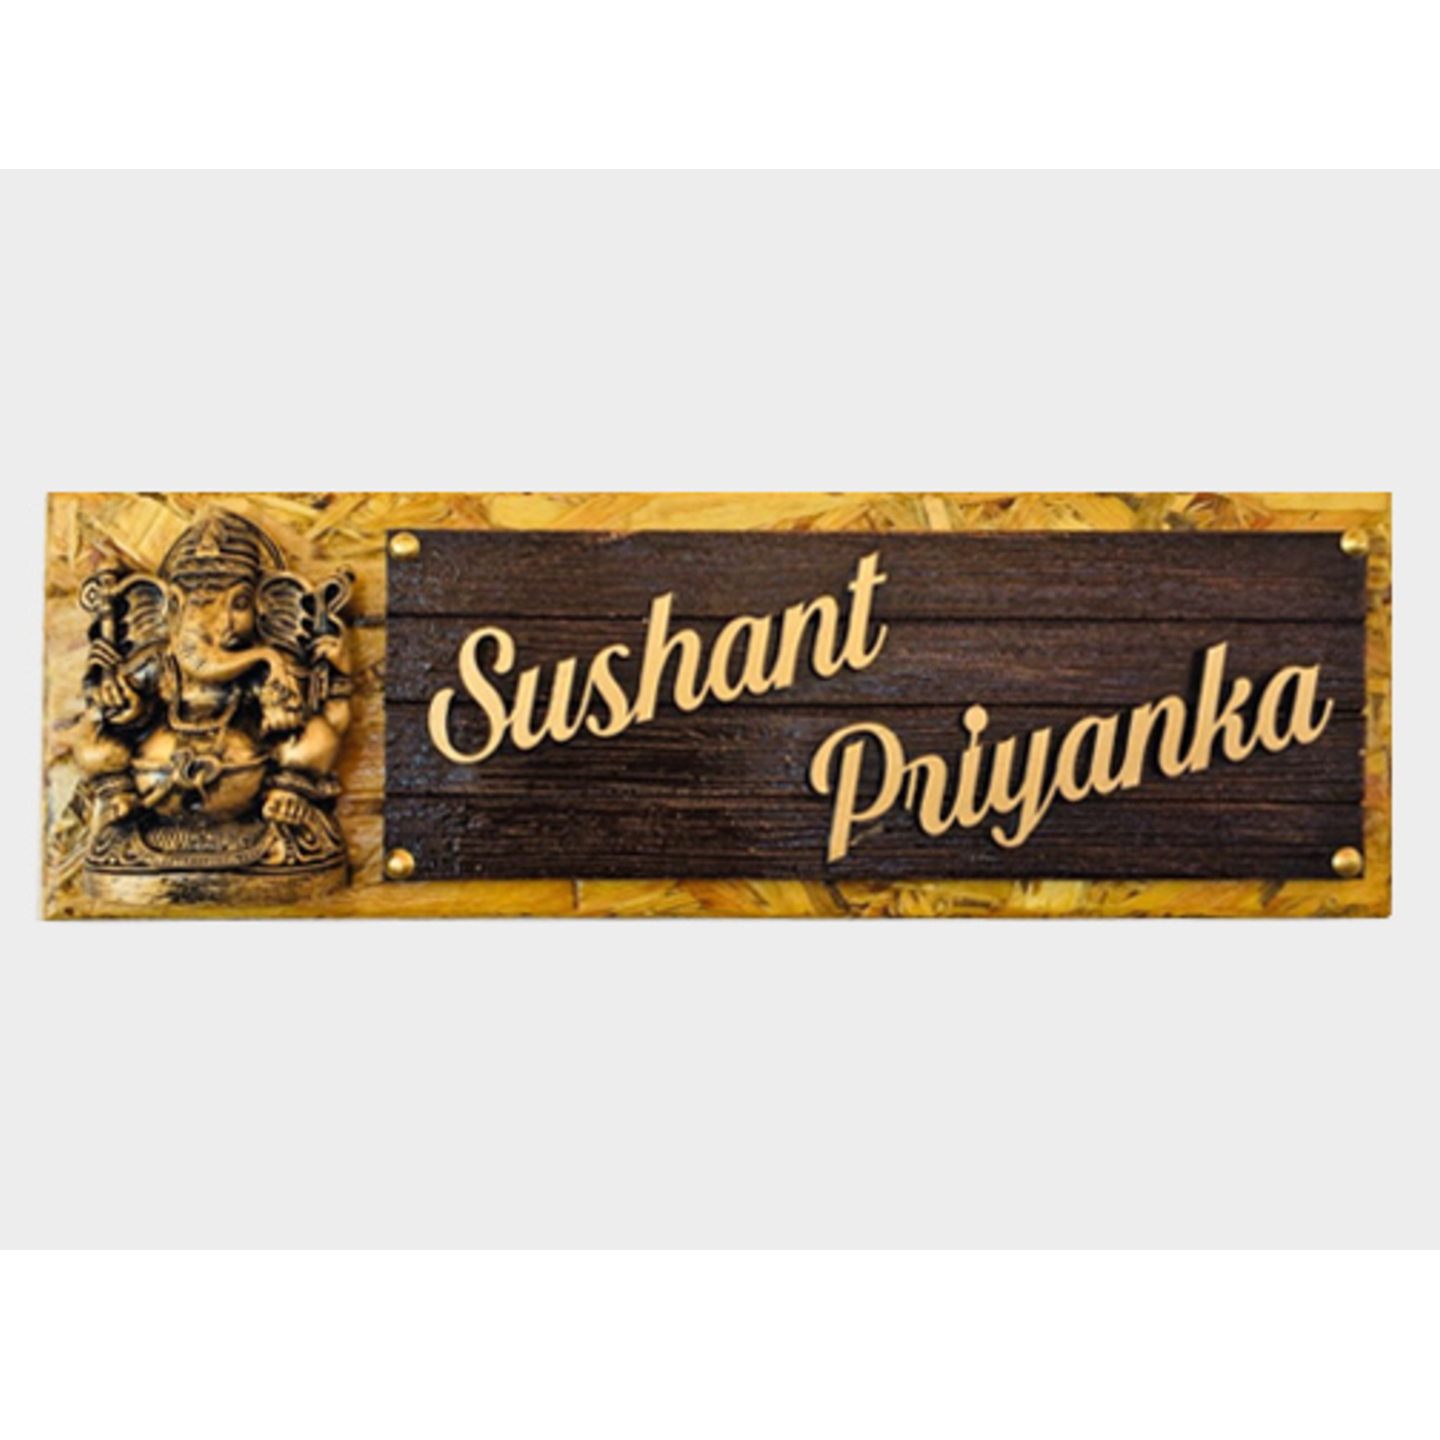 Sushant Priyanka